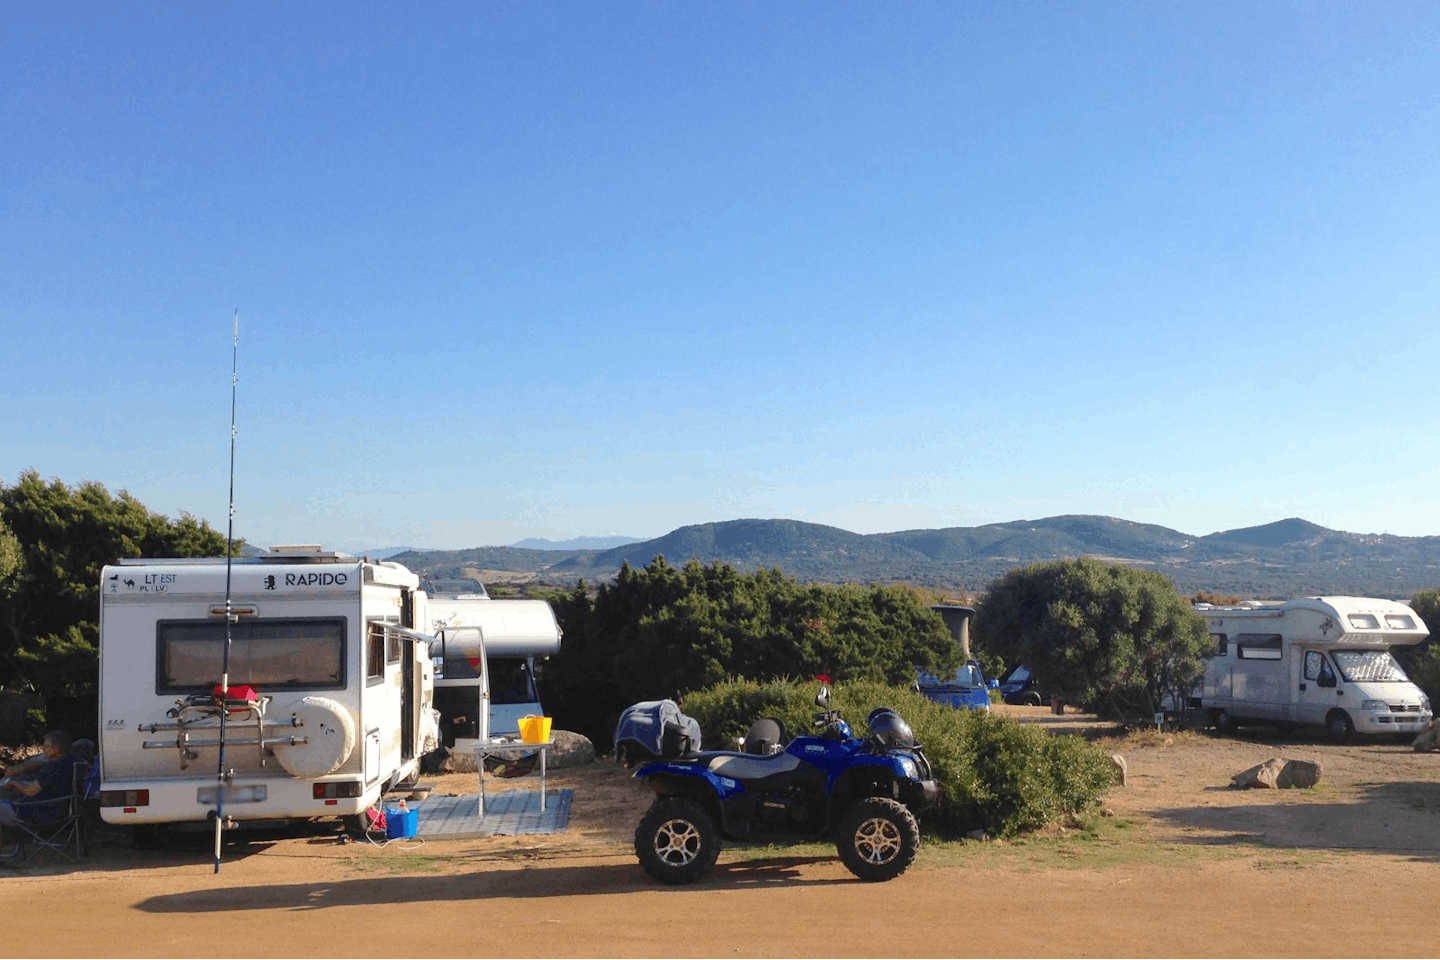 Camping Isola dei Gabbiani - Stellplätze des Campingplatzes mit Wohnmobilen darauf